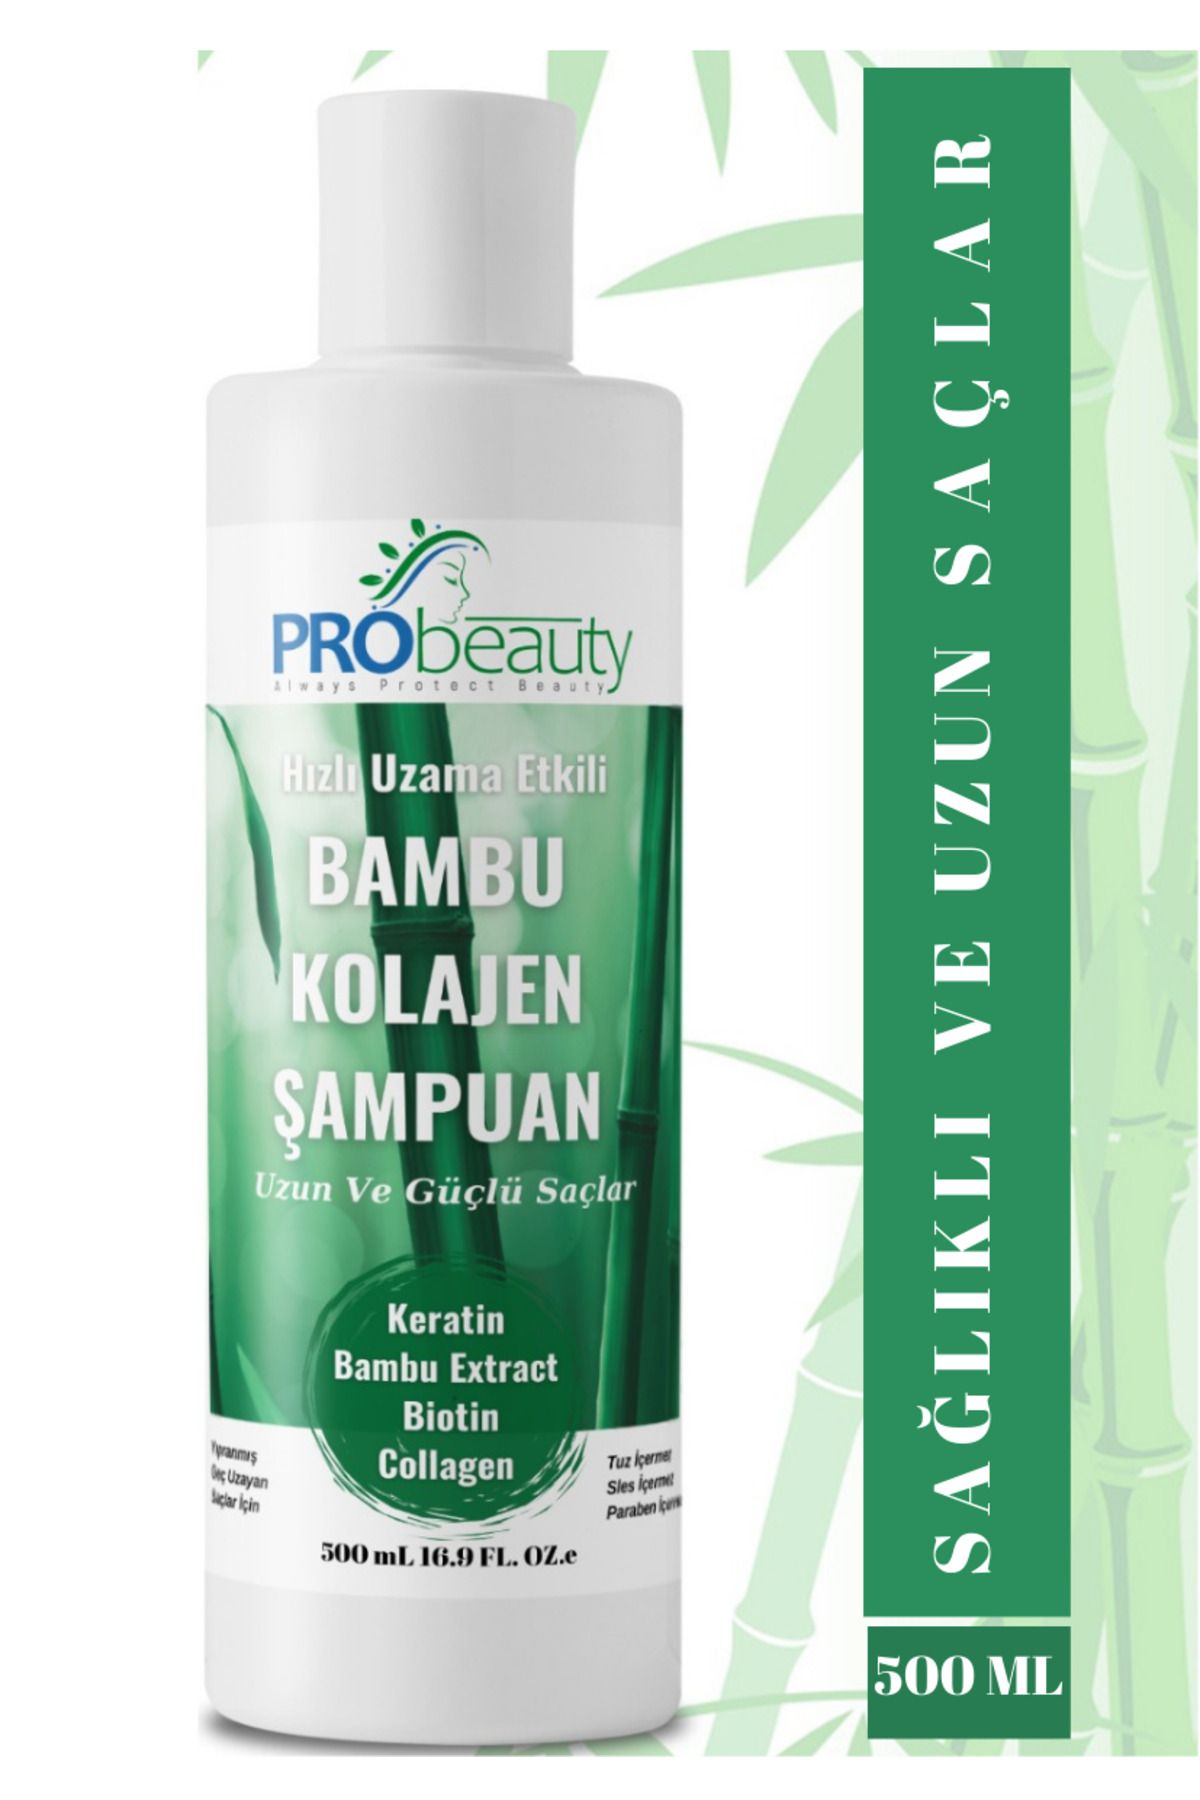 PRObeauty Hızlı Ve Sağlıklı Saç Uzatma Bambu Şampuan Kolajen Keratin Biotin Içerikli Sülfatsız 500ml